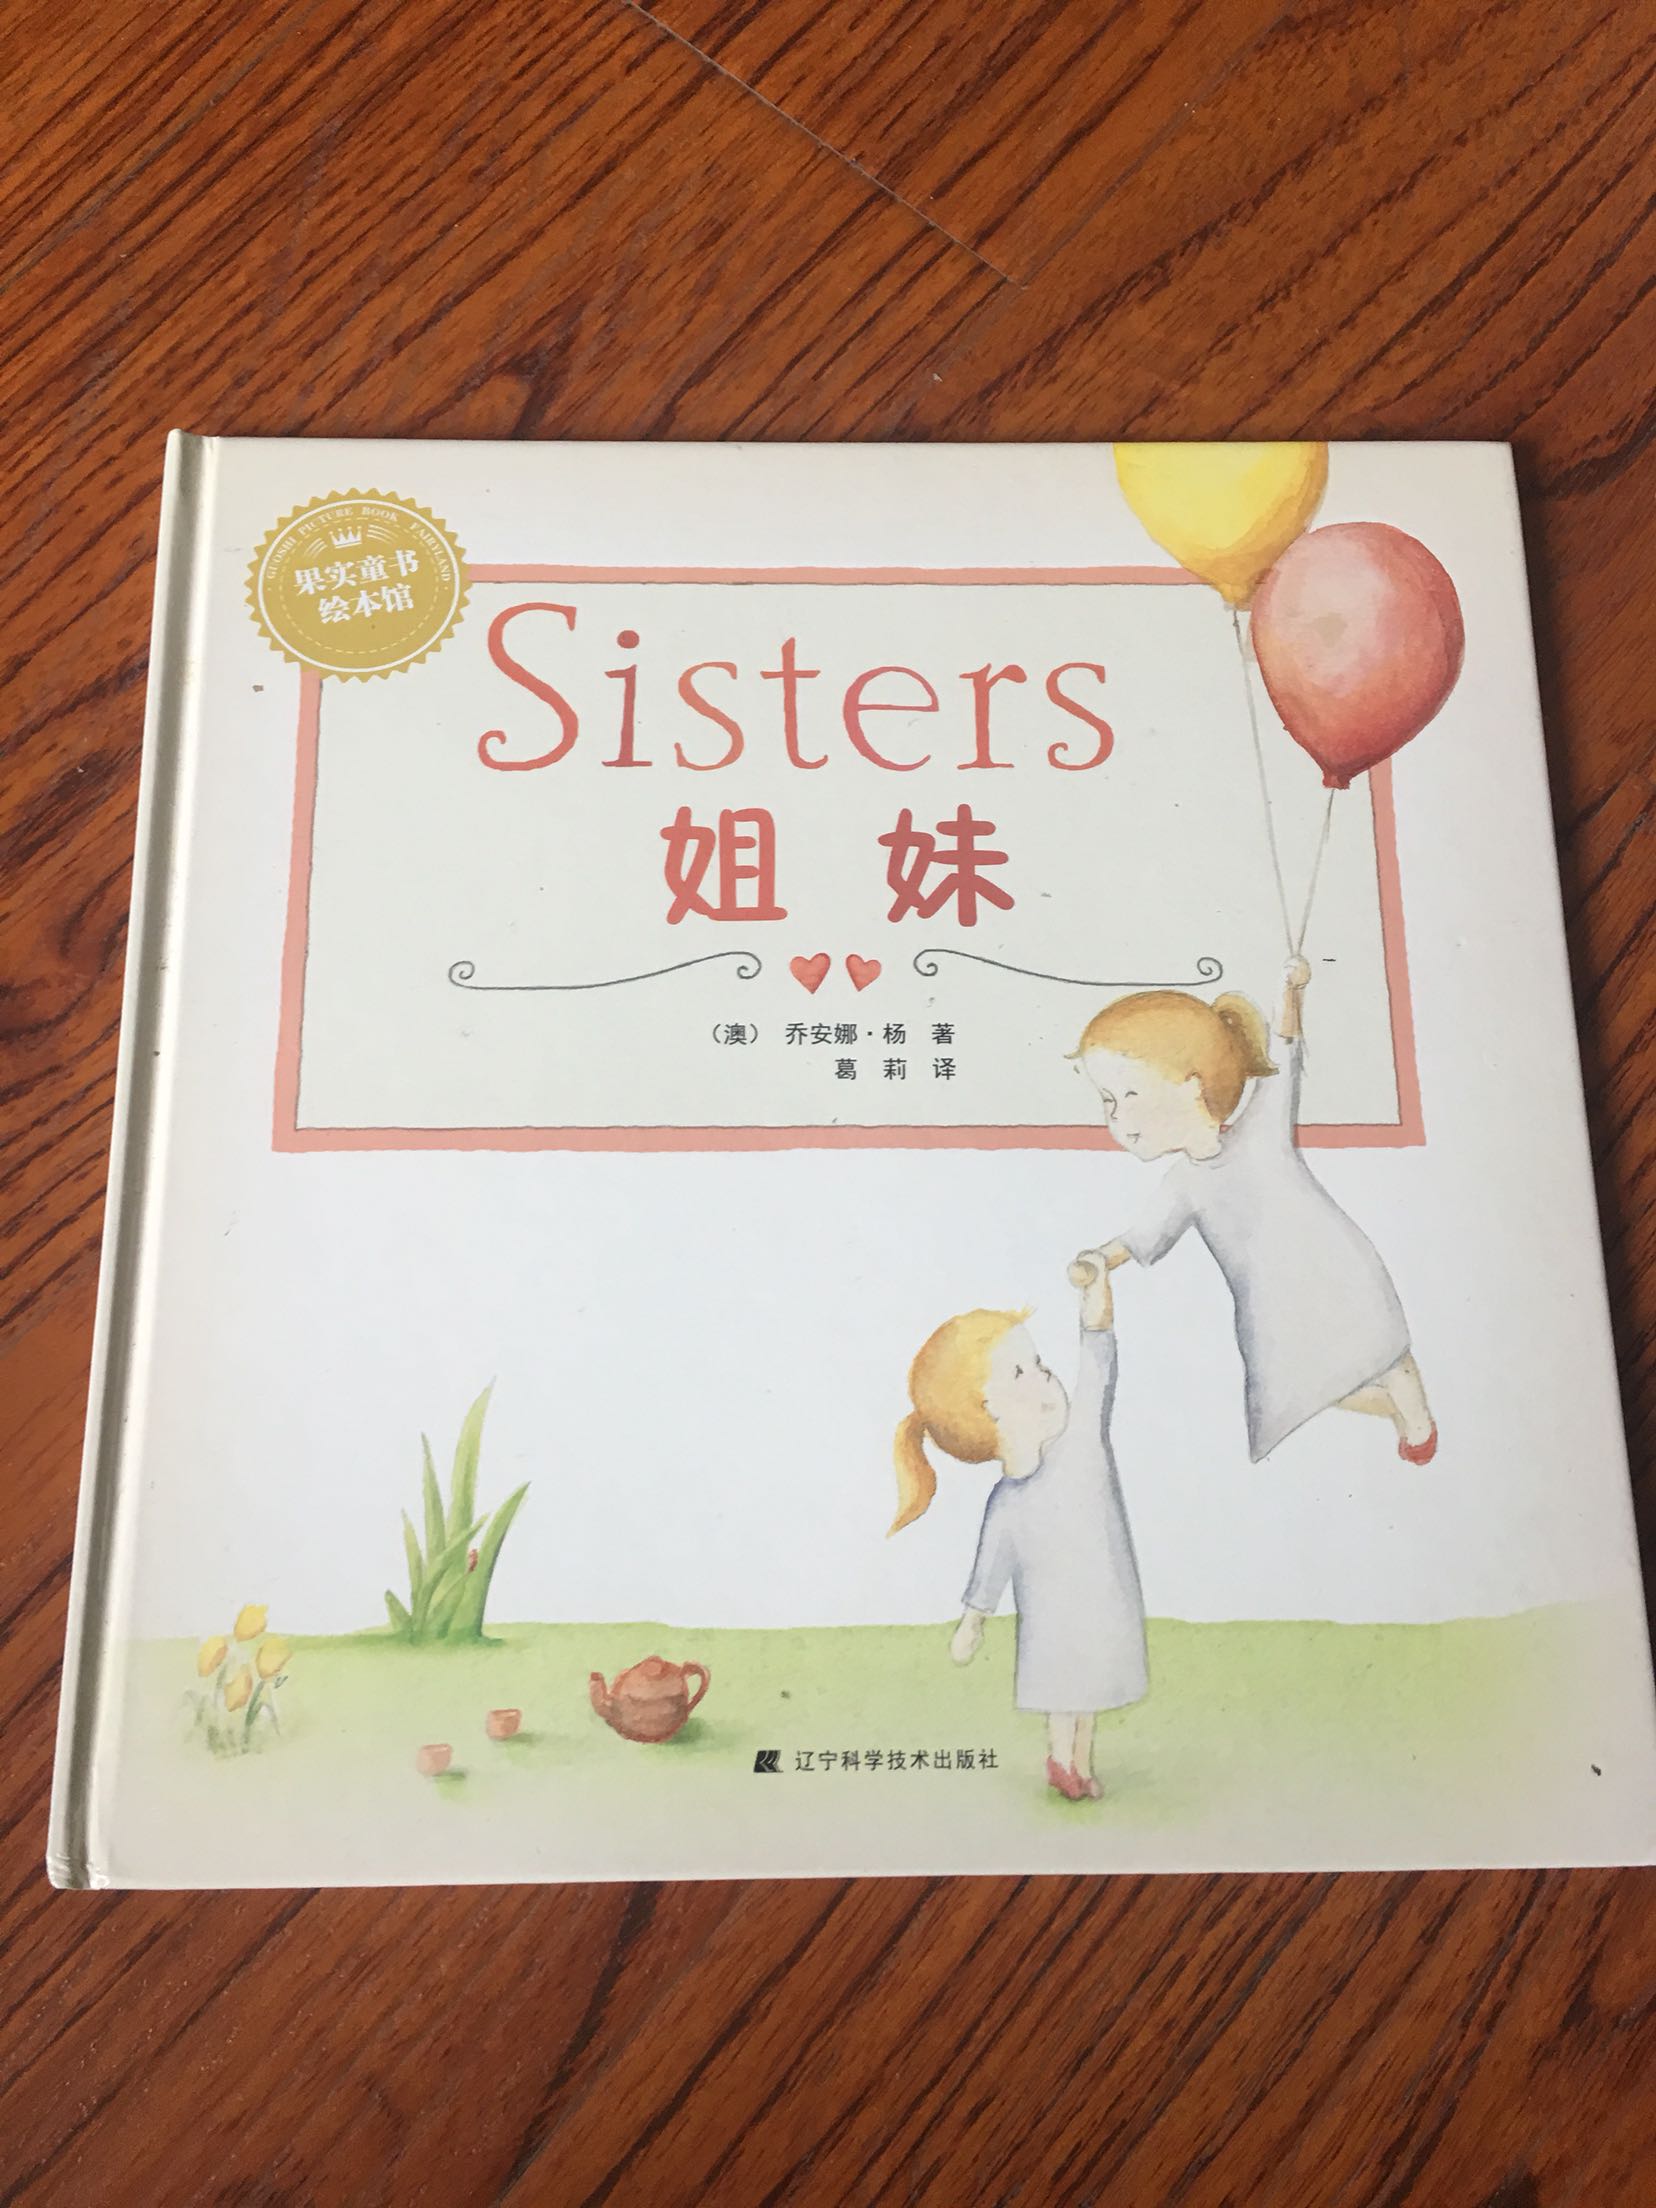 哦莫名其妙的一本书，没有姐姐妹妹的孩子理解不了